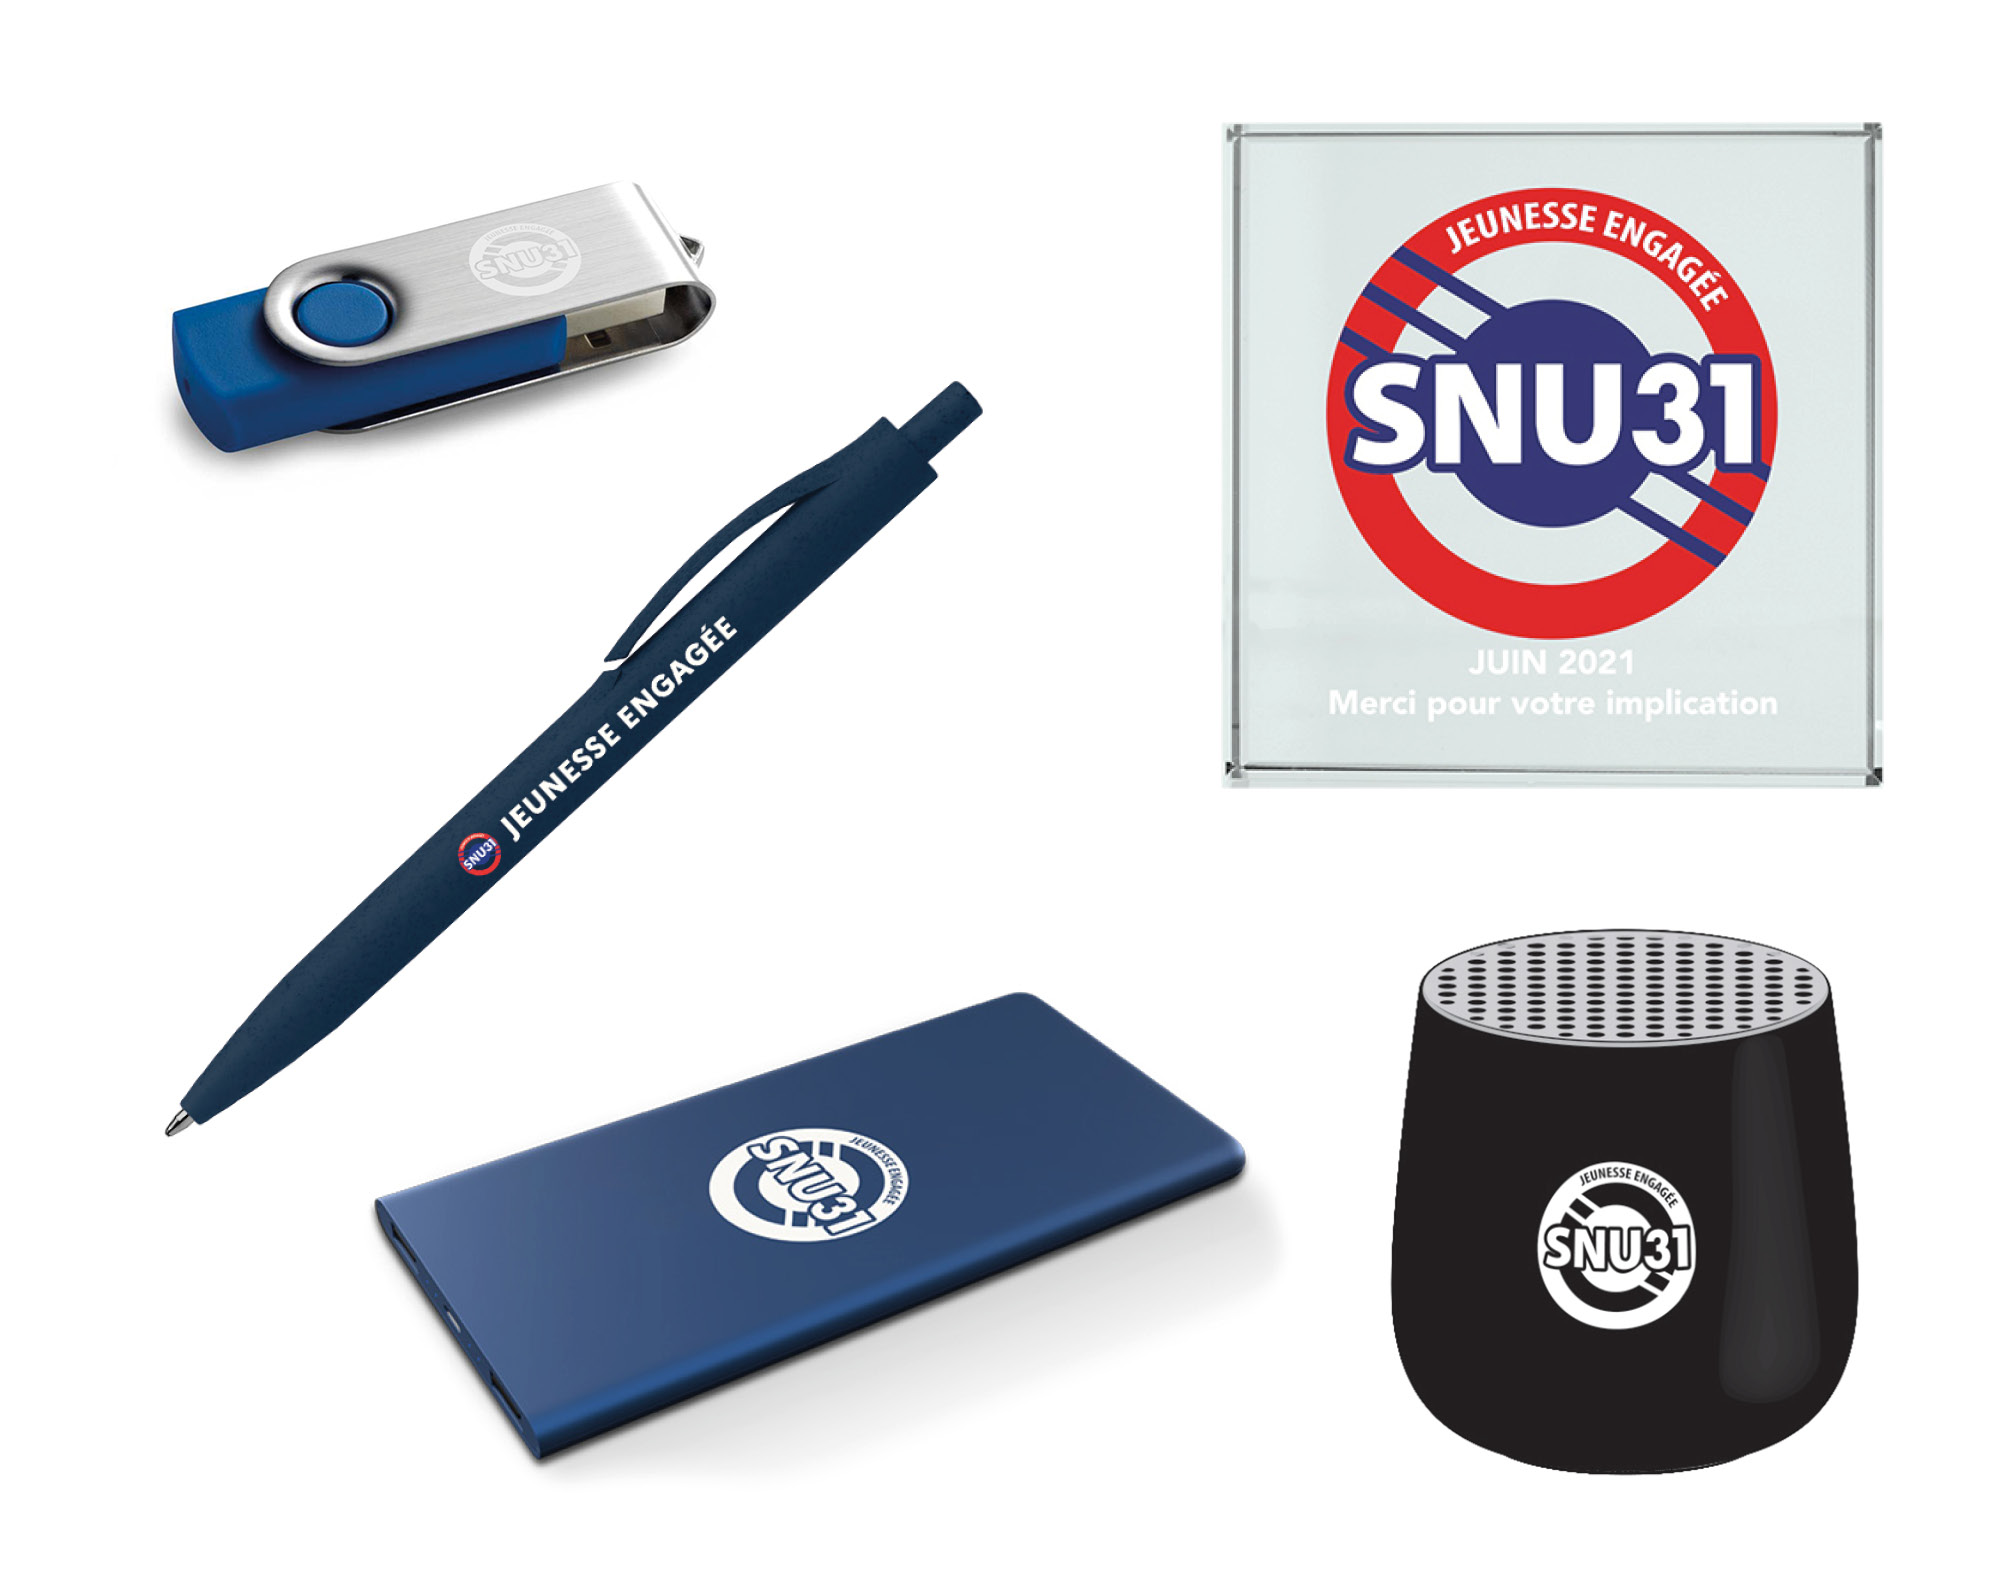 Déclinaisons du logo SNU31 sur divers supports : cadre photo, règlement intérieur, cahier patriotique, patch, stylo, trophée, batterie externe, kakémono, bâche…